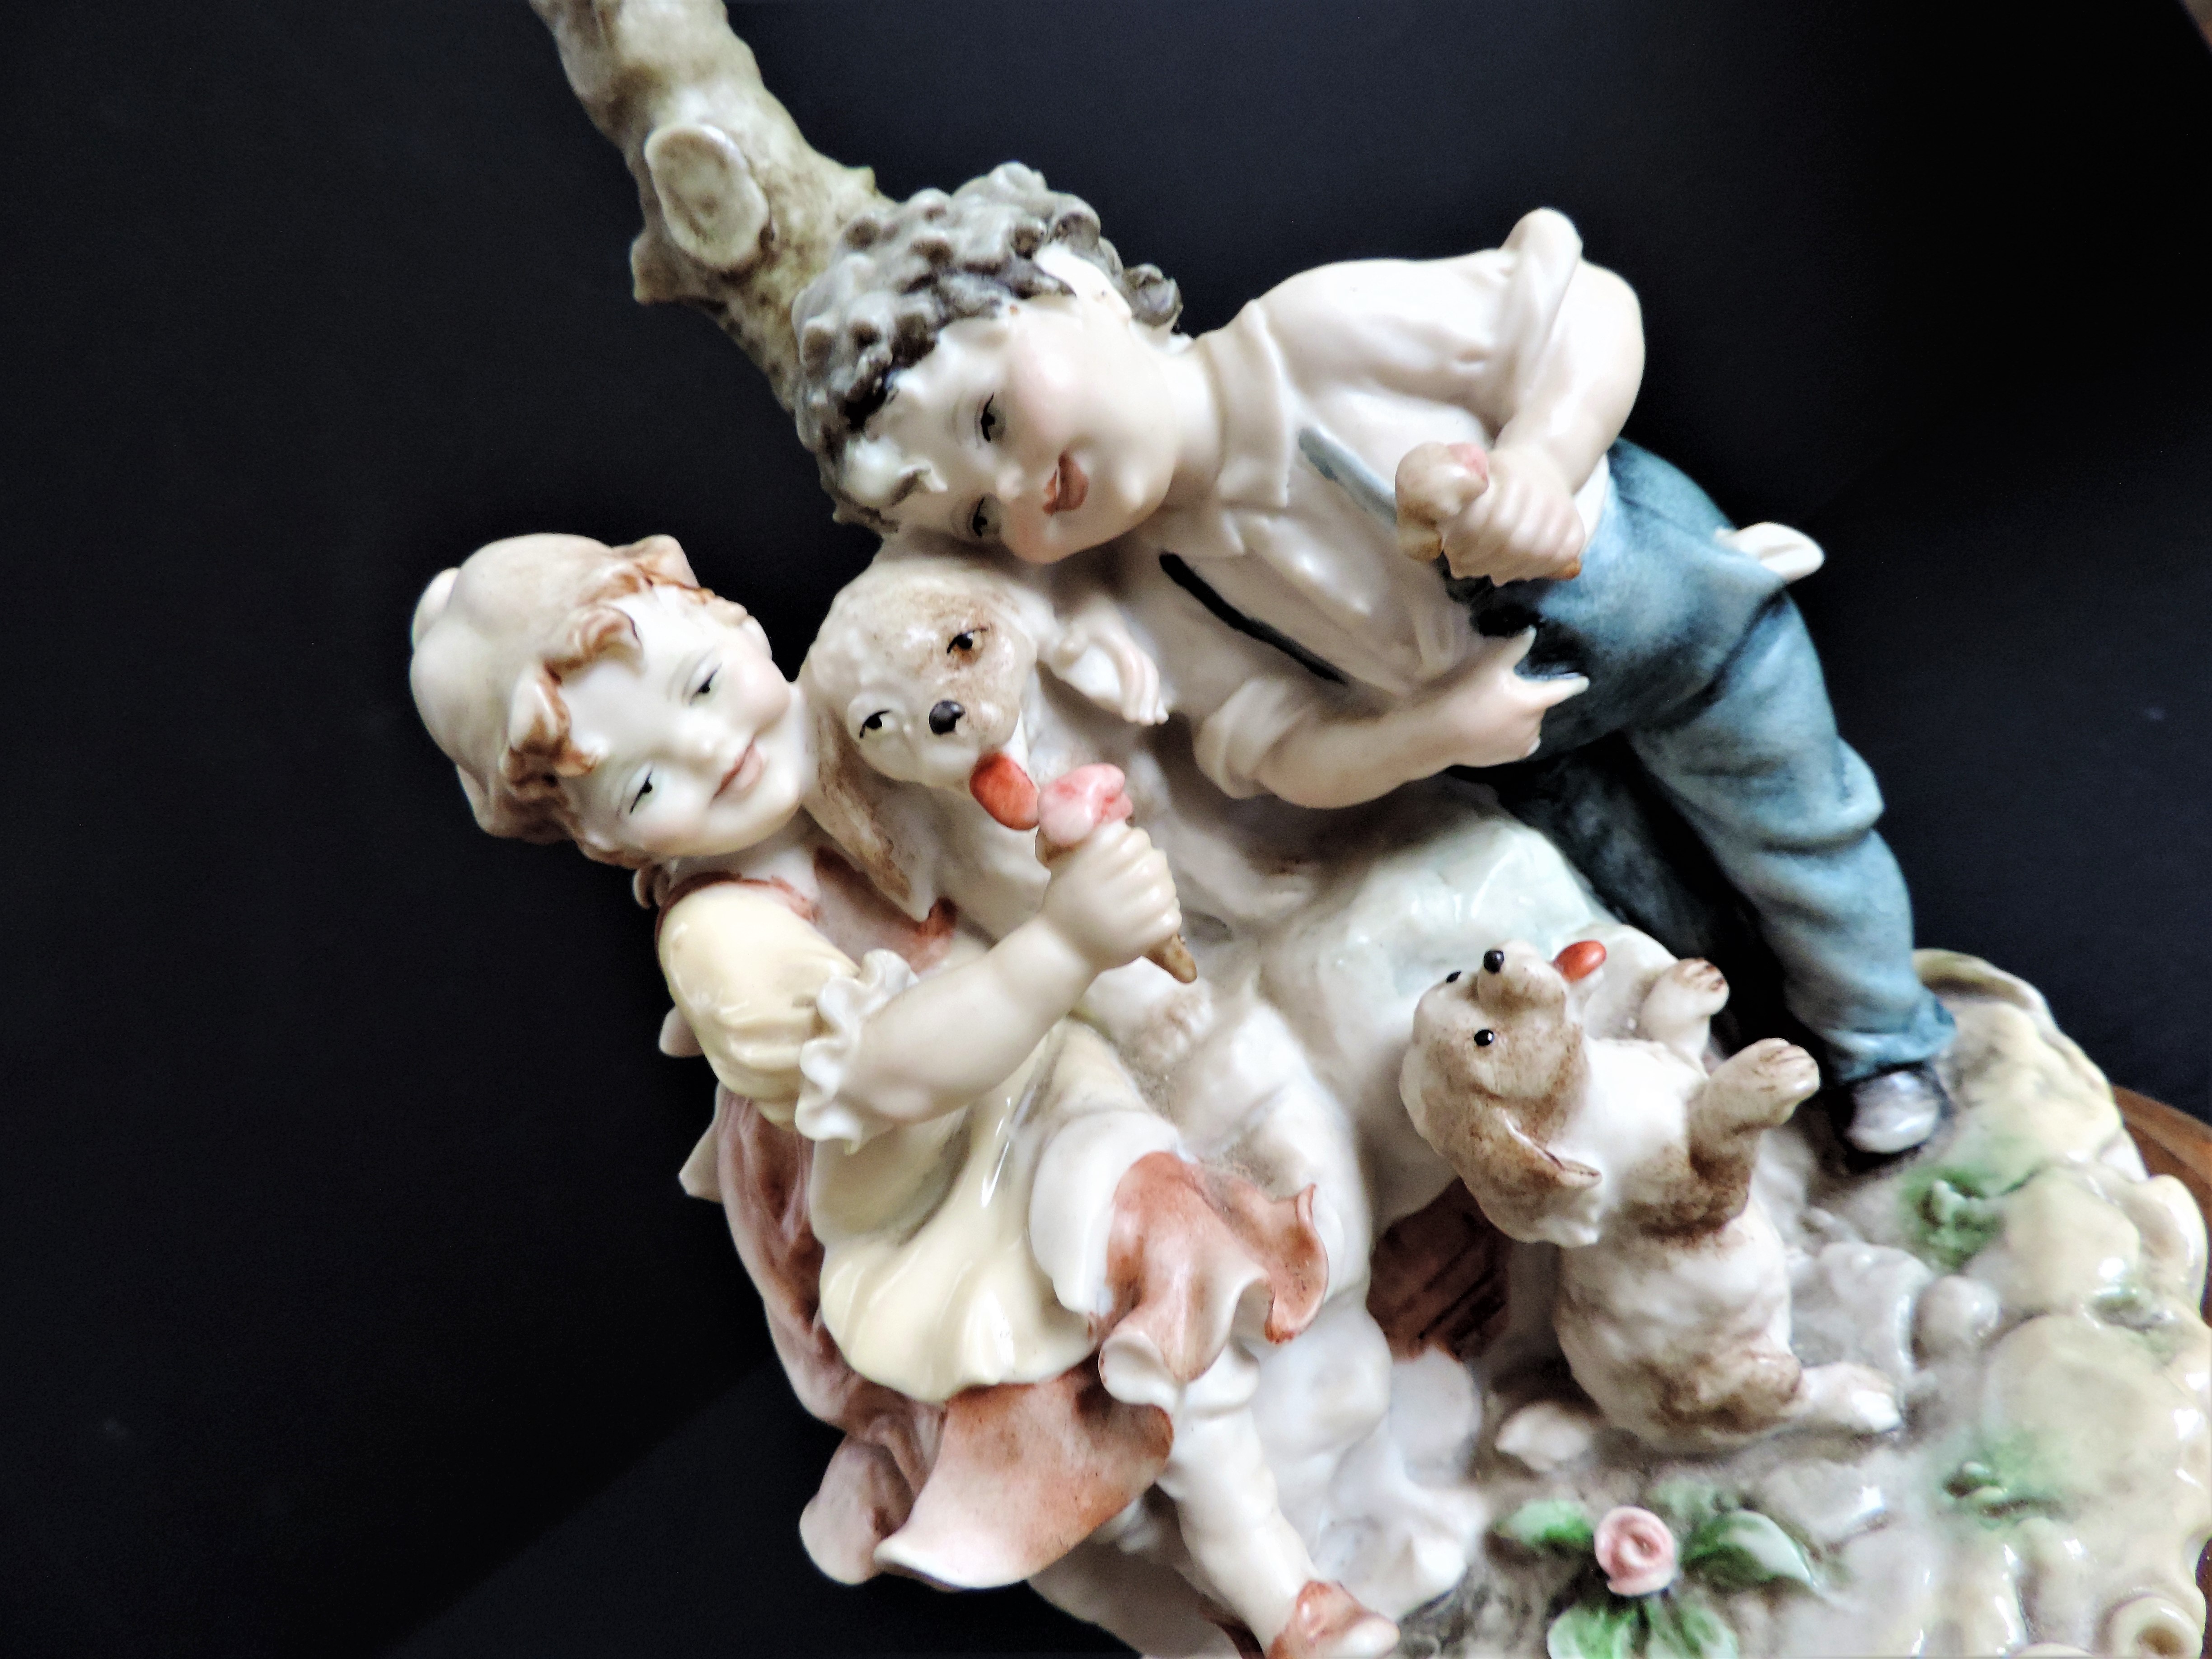 Bruno Merli Naples Porcelain Figurine Florence Italy - Image 2 of 6